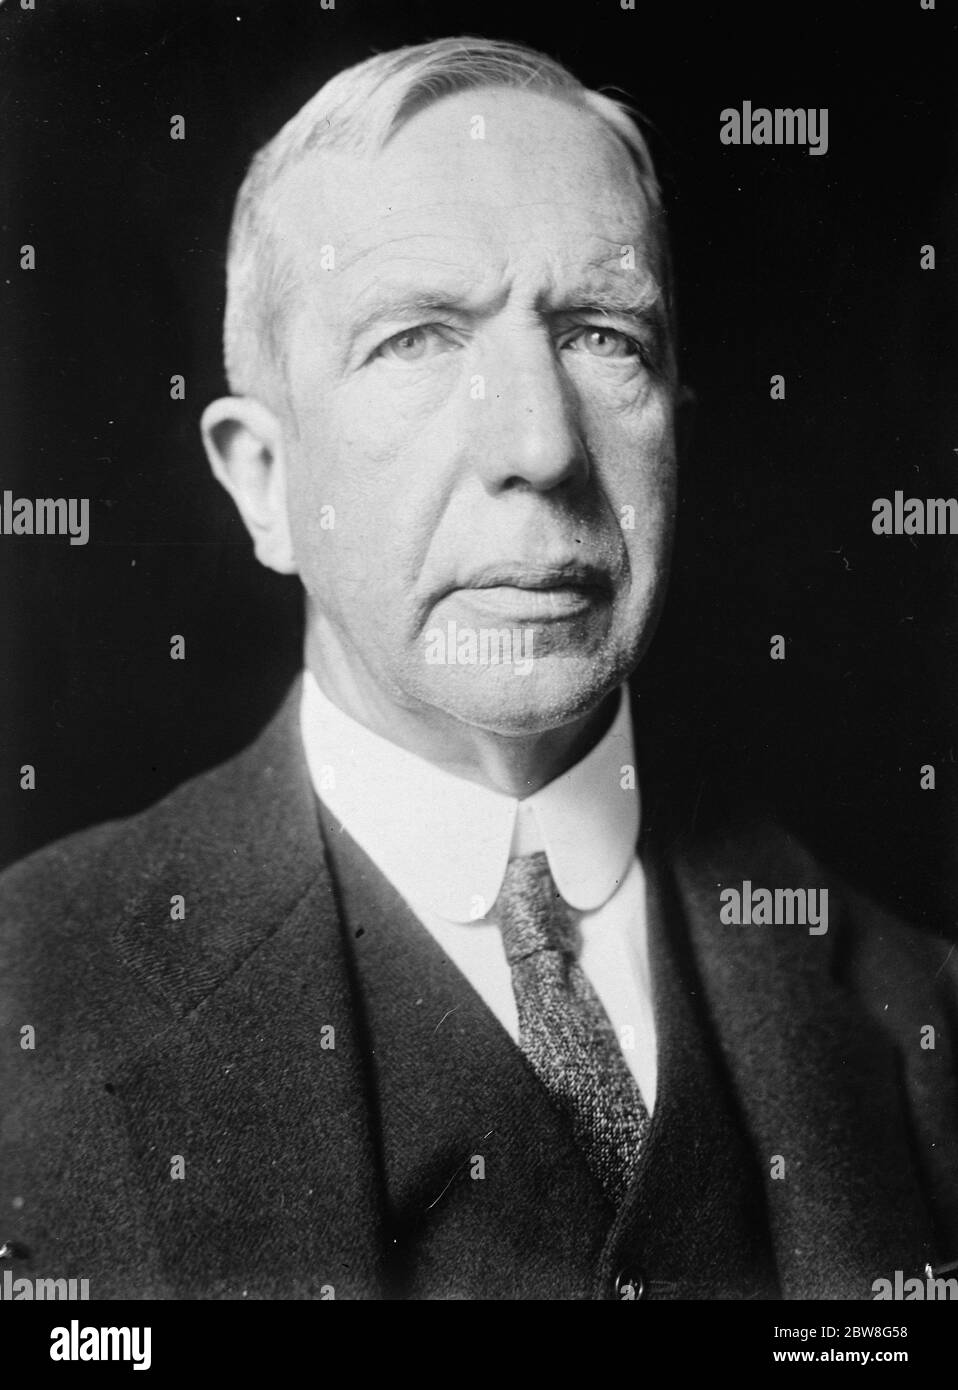 Graf von Limburg Stirum, bemerkte niederländischen Diplomaten, jetzt Generalgouverneur von Niederländisch-Ostindien. Januar 1930 Stockfoto